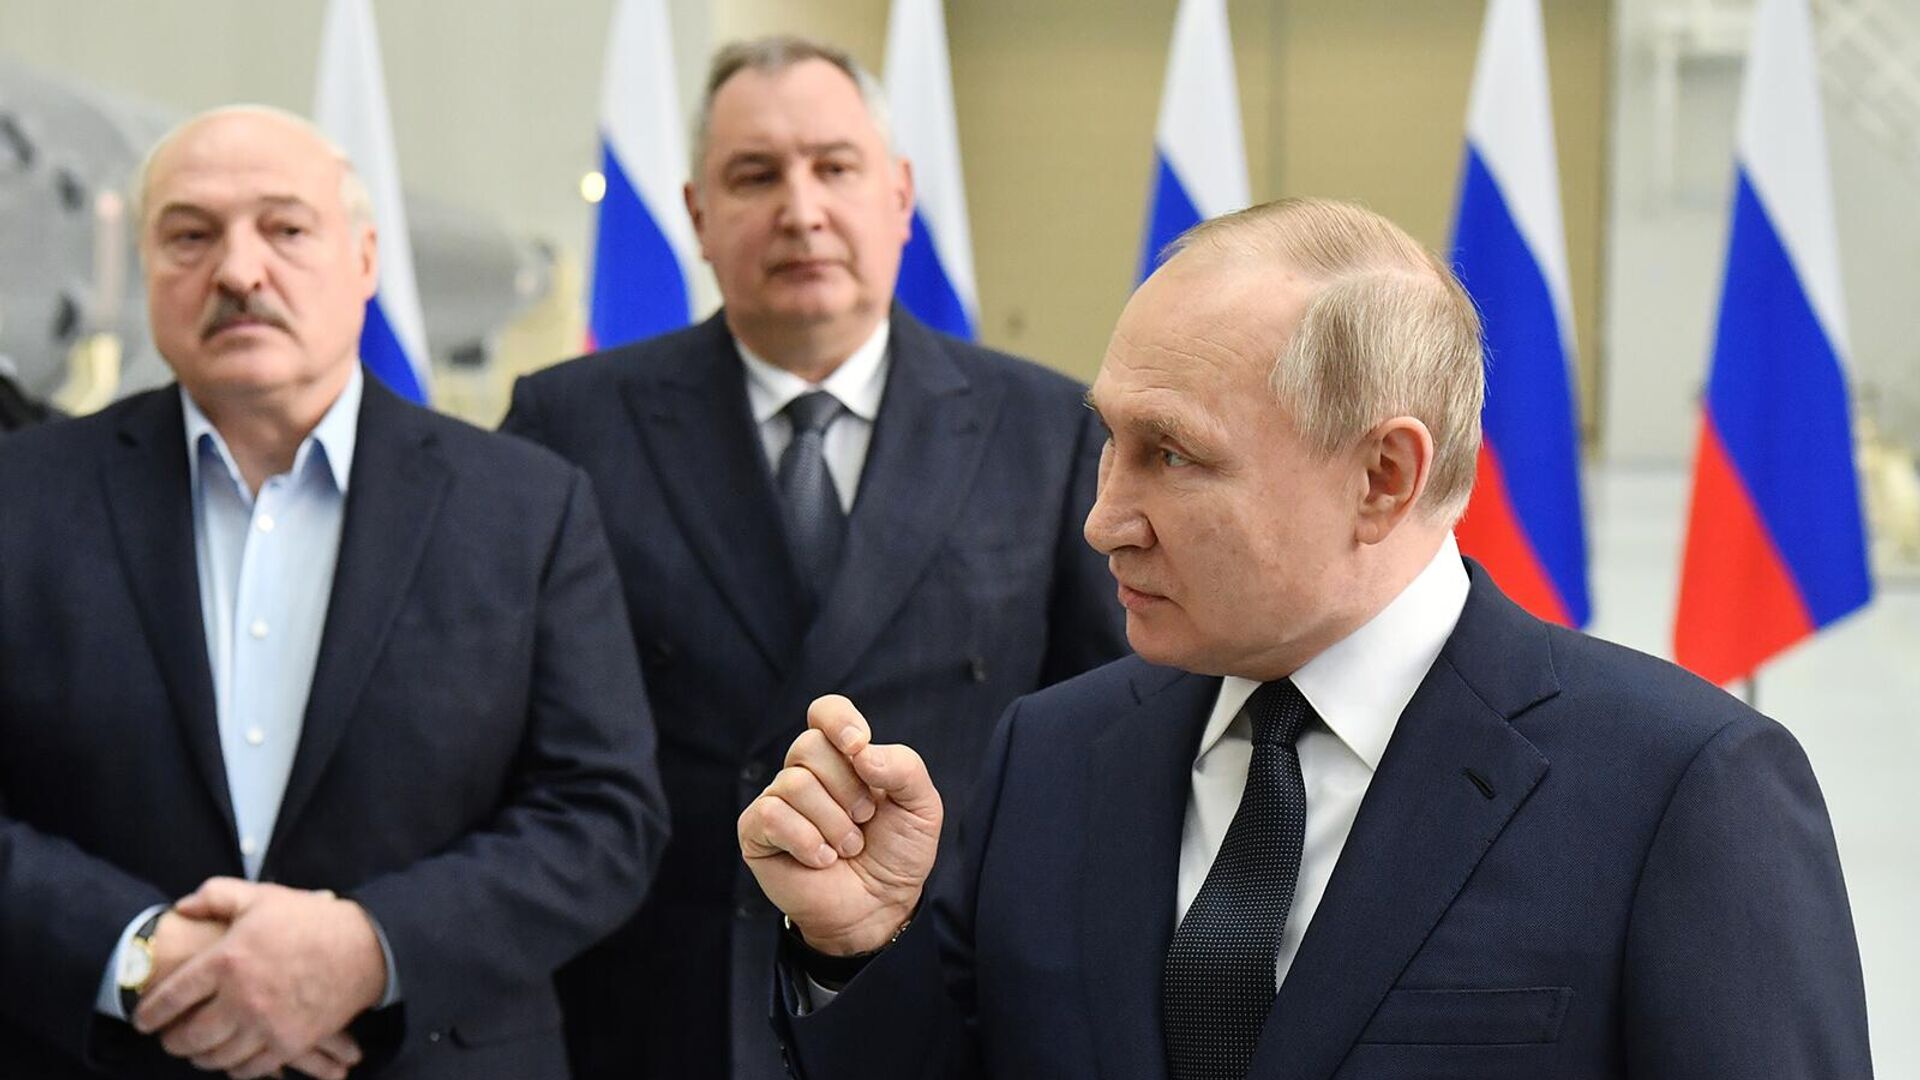 Путин: В Буче организован такой же фейк, как и в Сирии с химоружием 